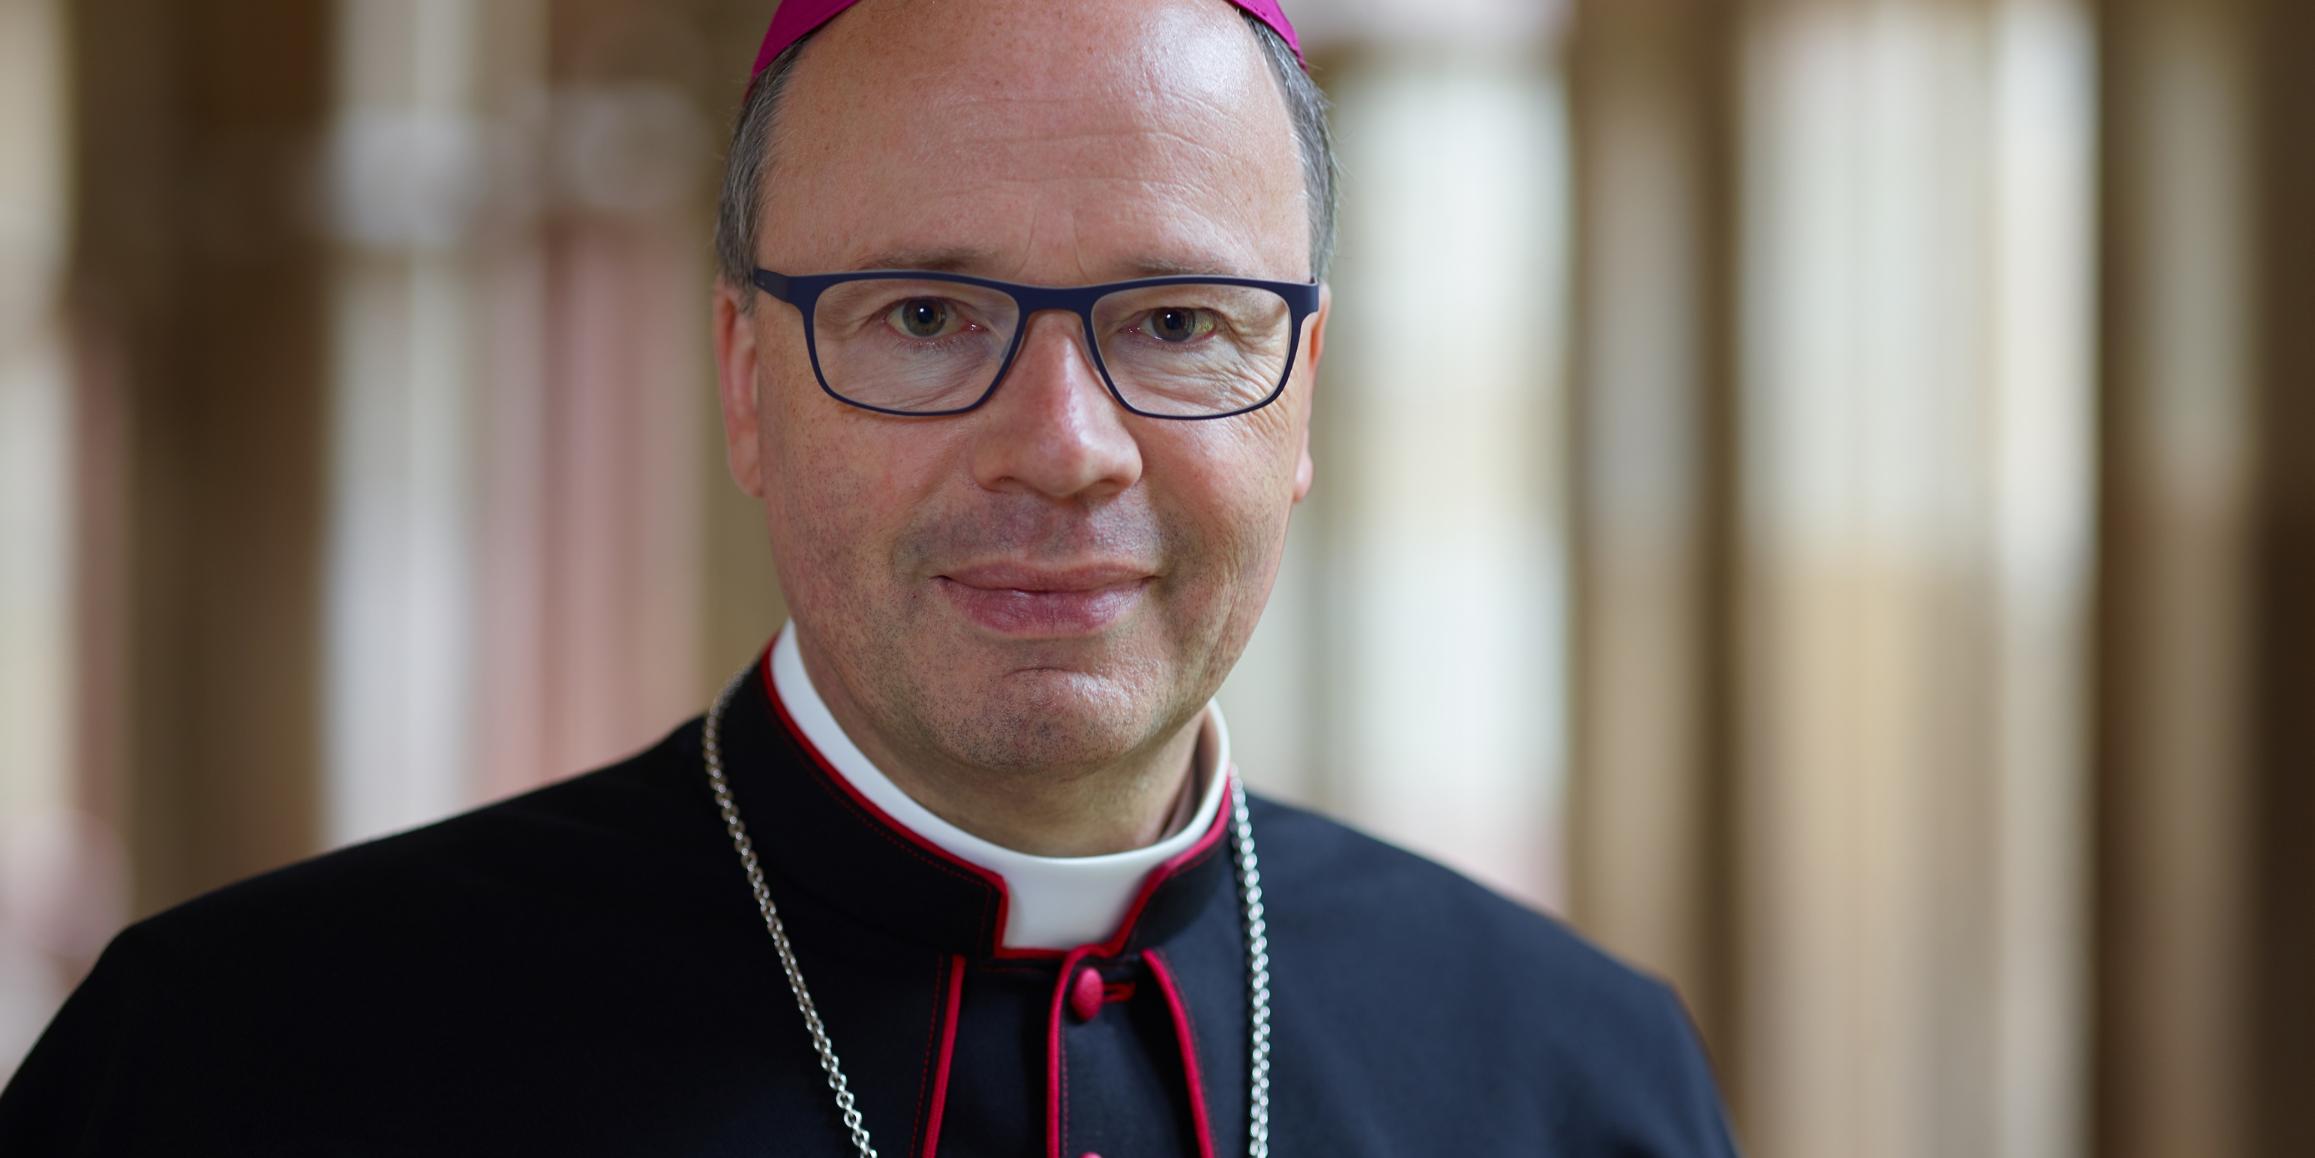 Bischof Dr. Stephan Ackermann ist Beauftragter der Deutschen Bischofskonferenz für Fragen sexuellen Missbrauchs